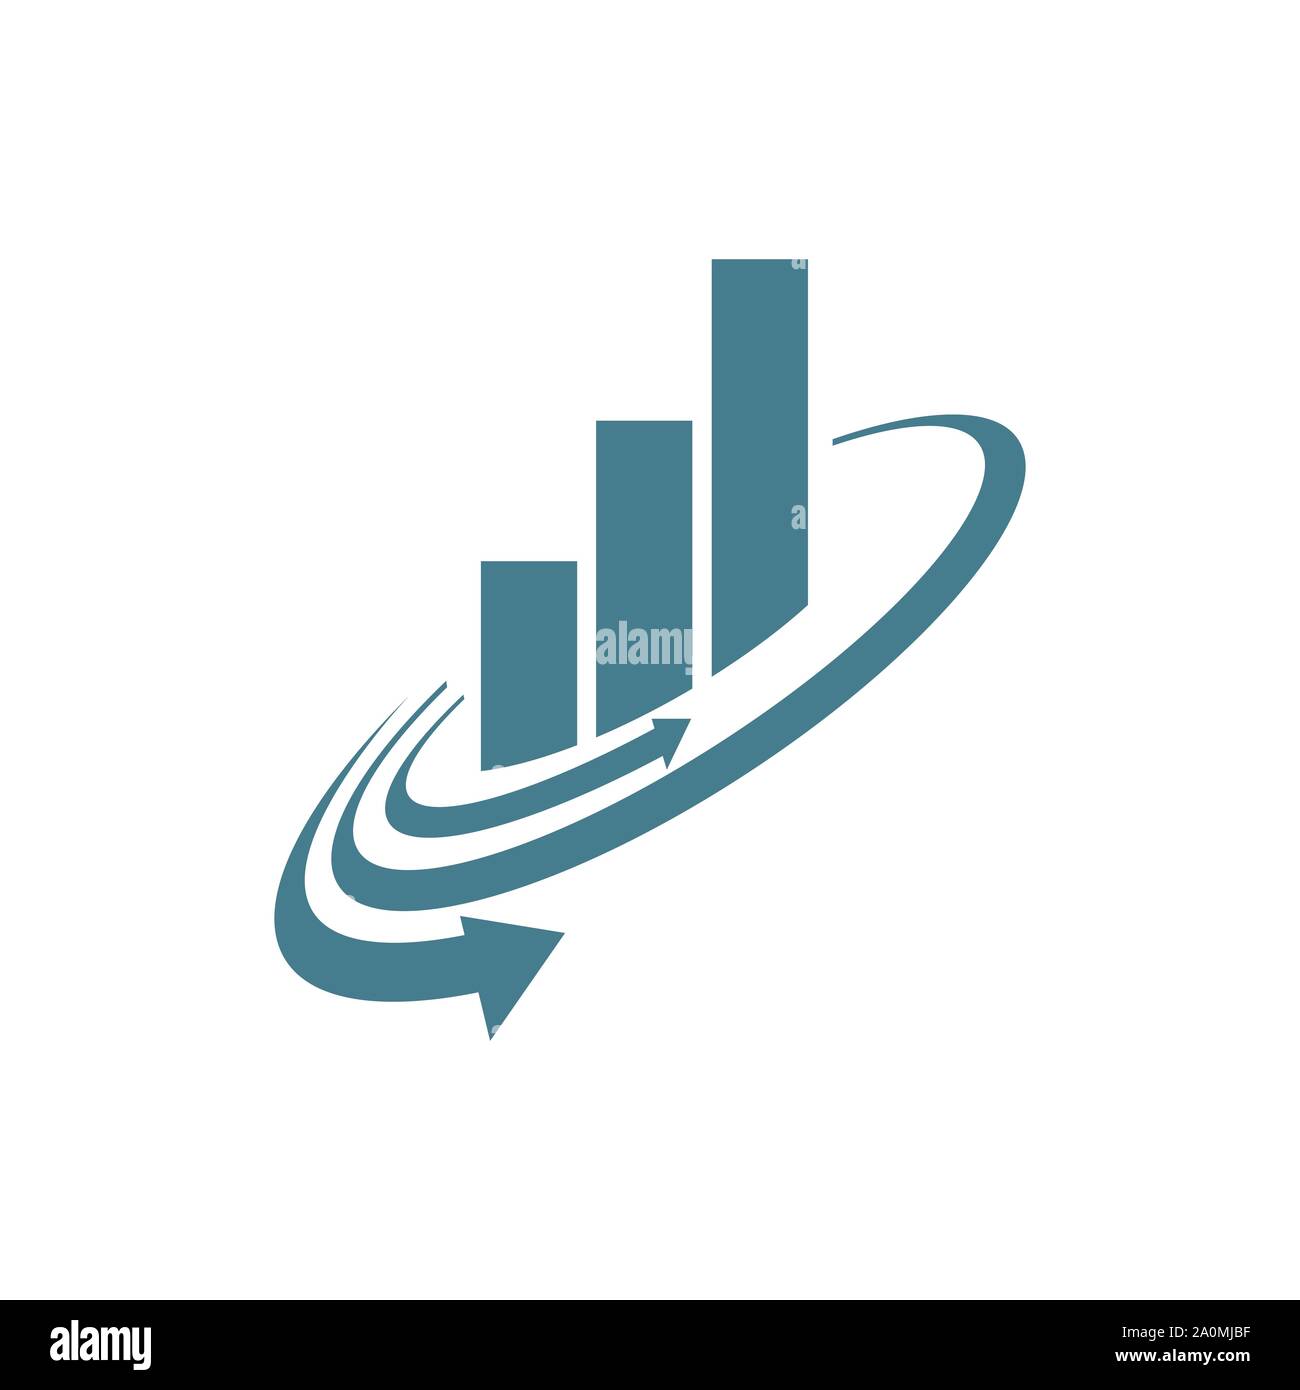 Abstrakte Grafik und Pfeil für Wirtschaft Corporate Finance marketing business logo Vektor Stock Vektor